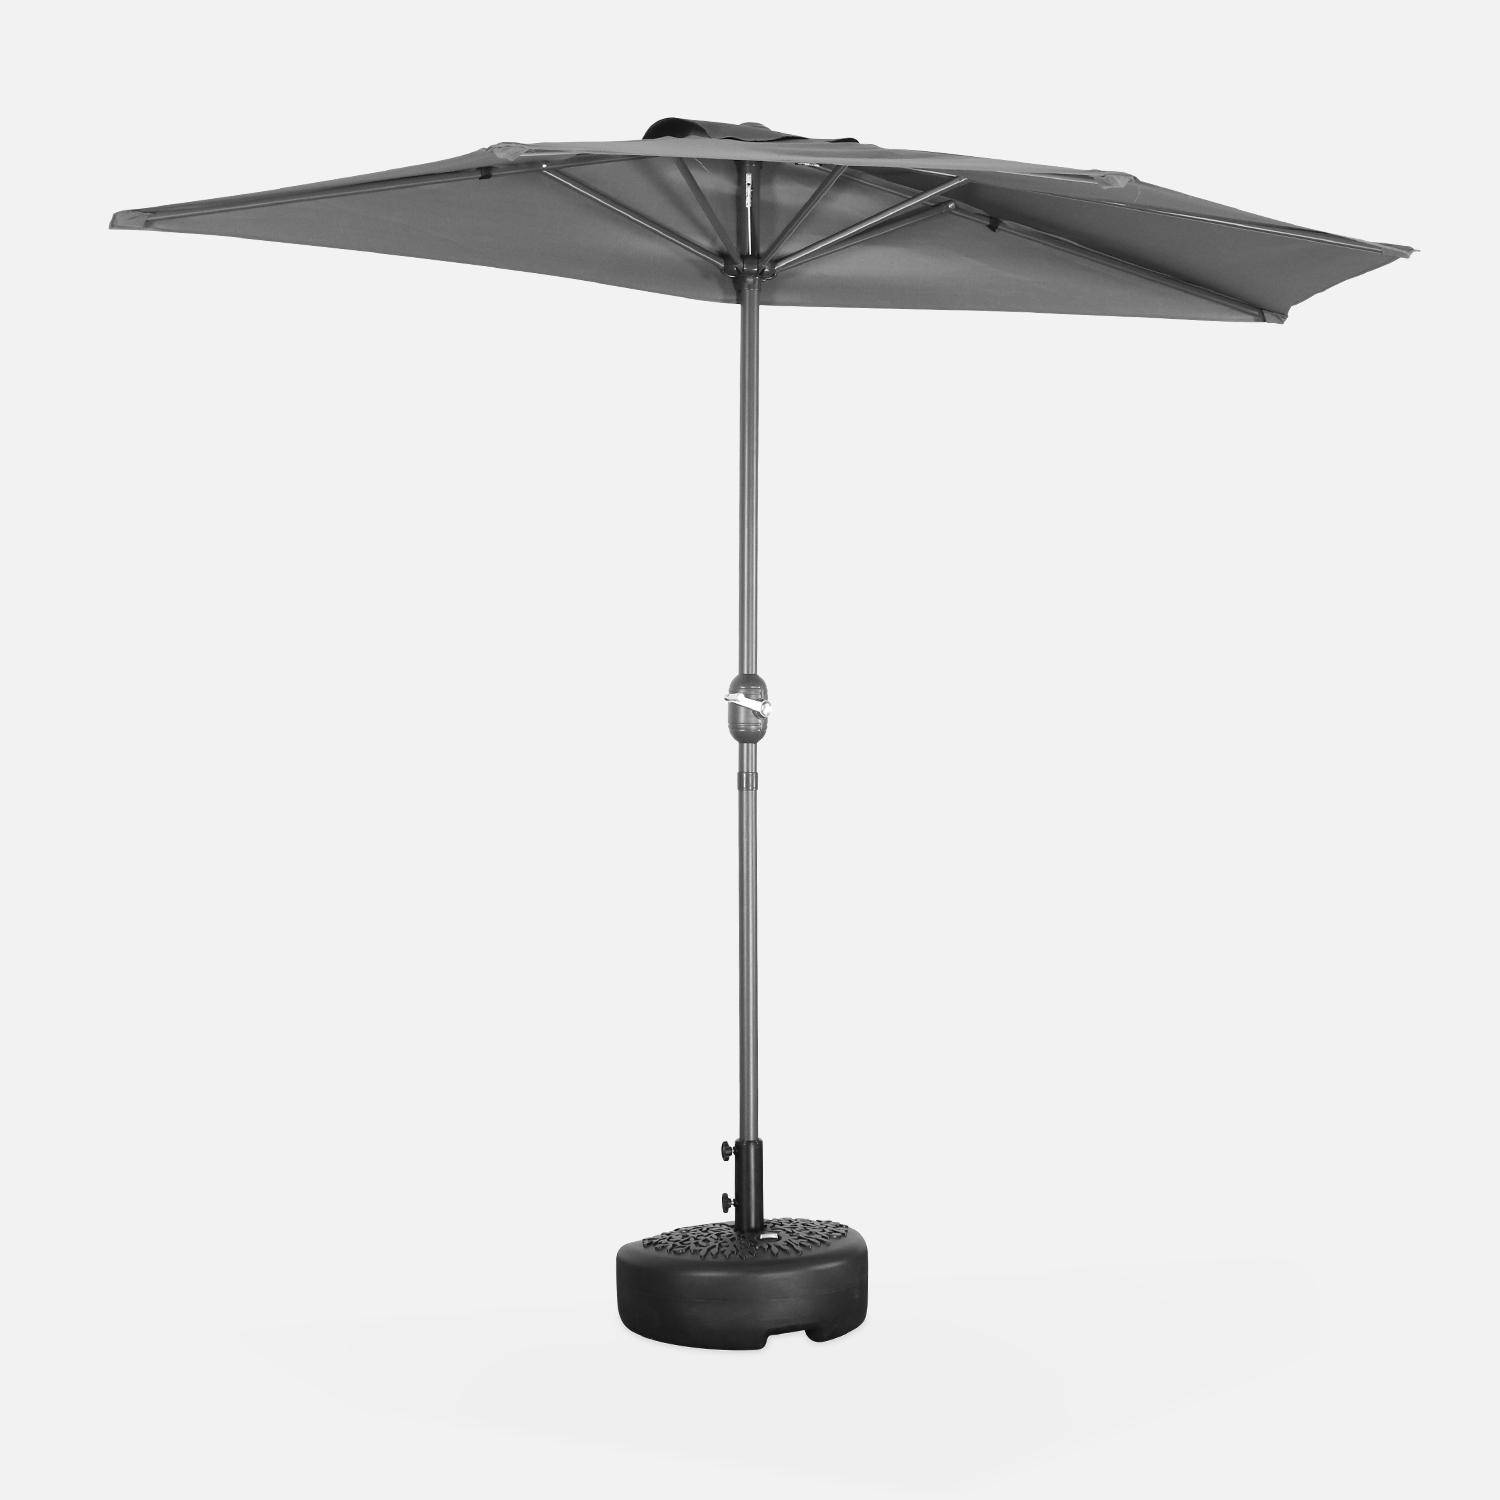  Parasol para balcón Ø250cm - CALVI - Medio parasol recto, mástil de aluminio con manivela, tejido gris Photo1